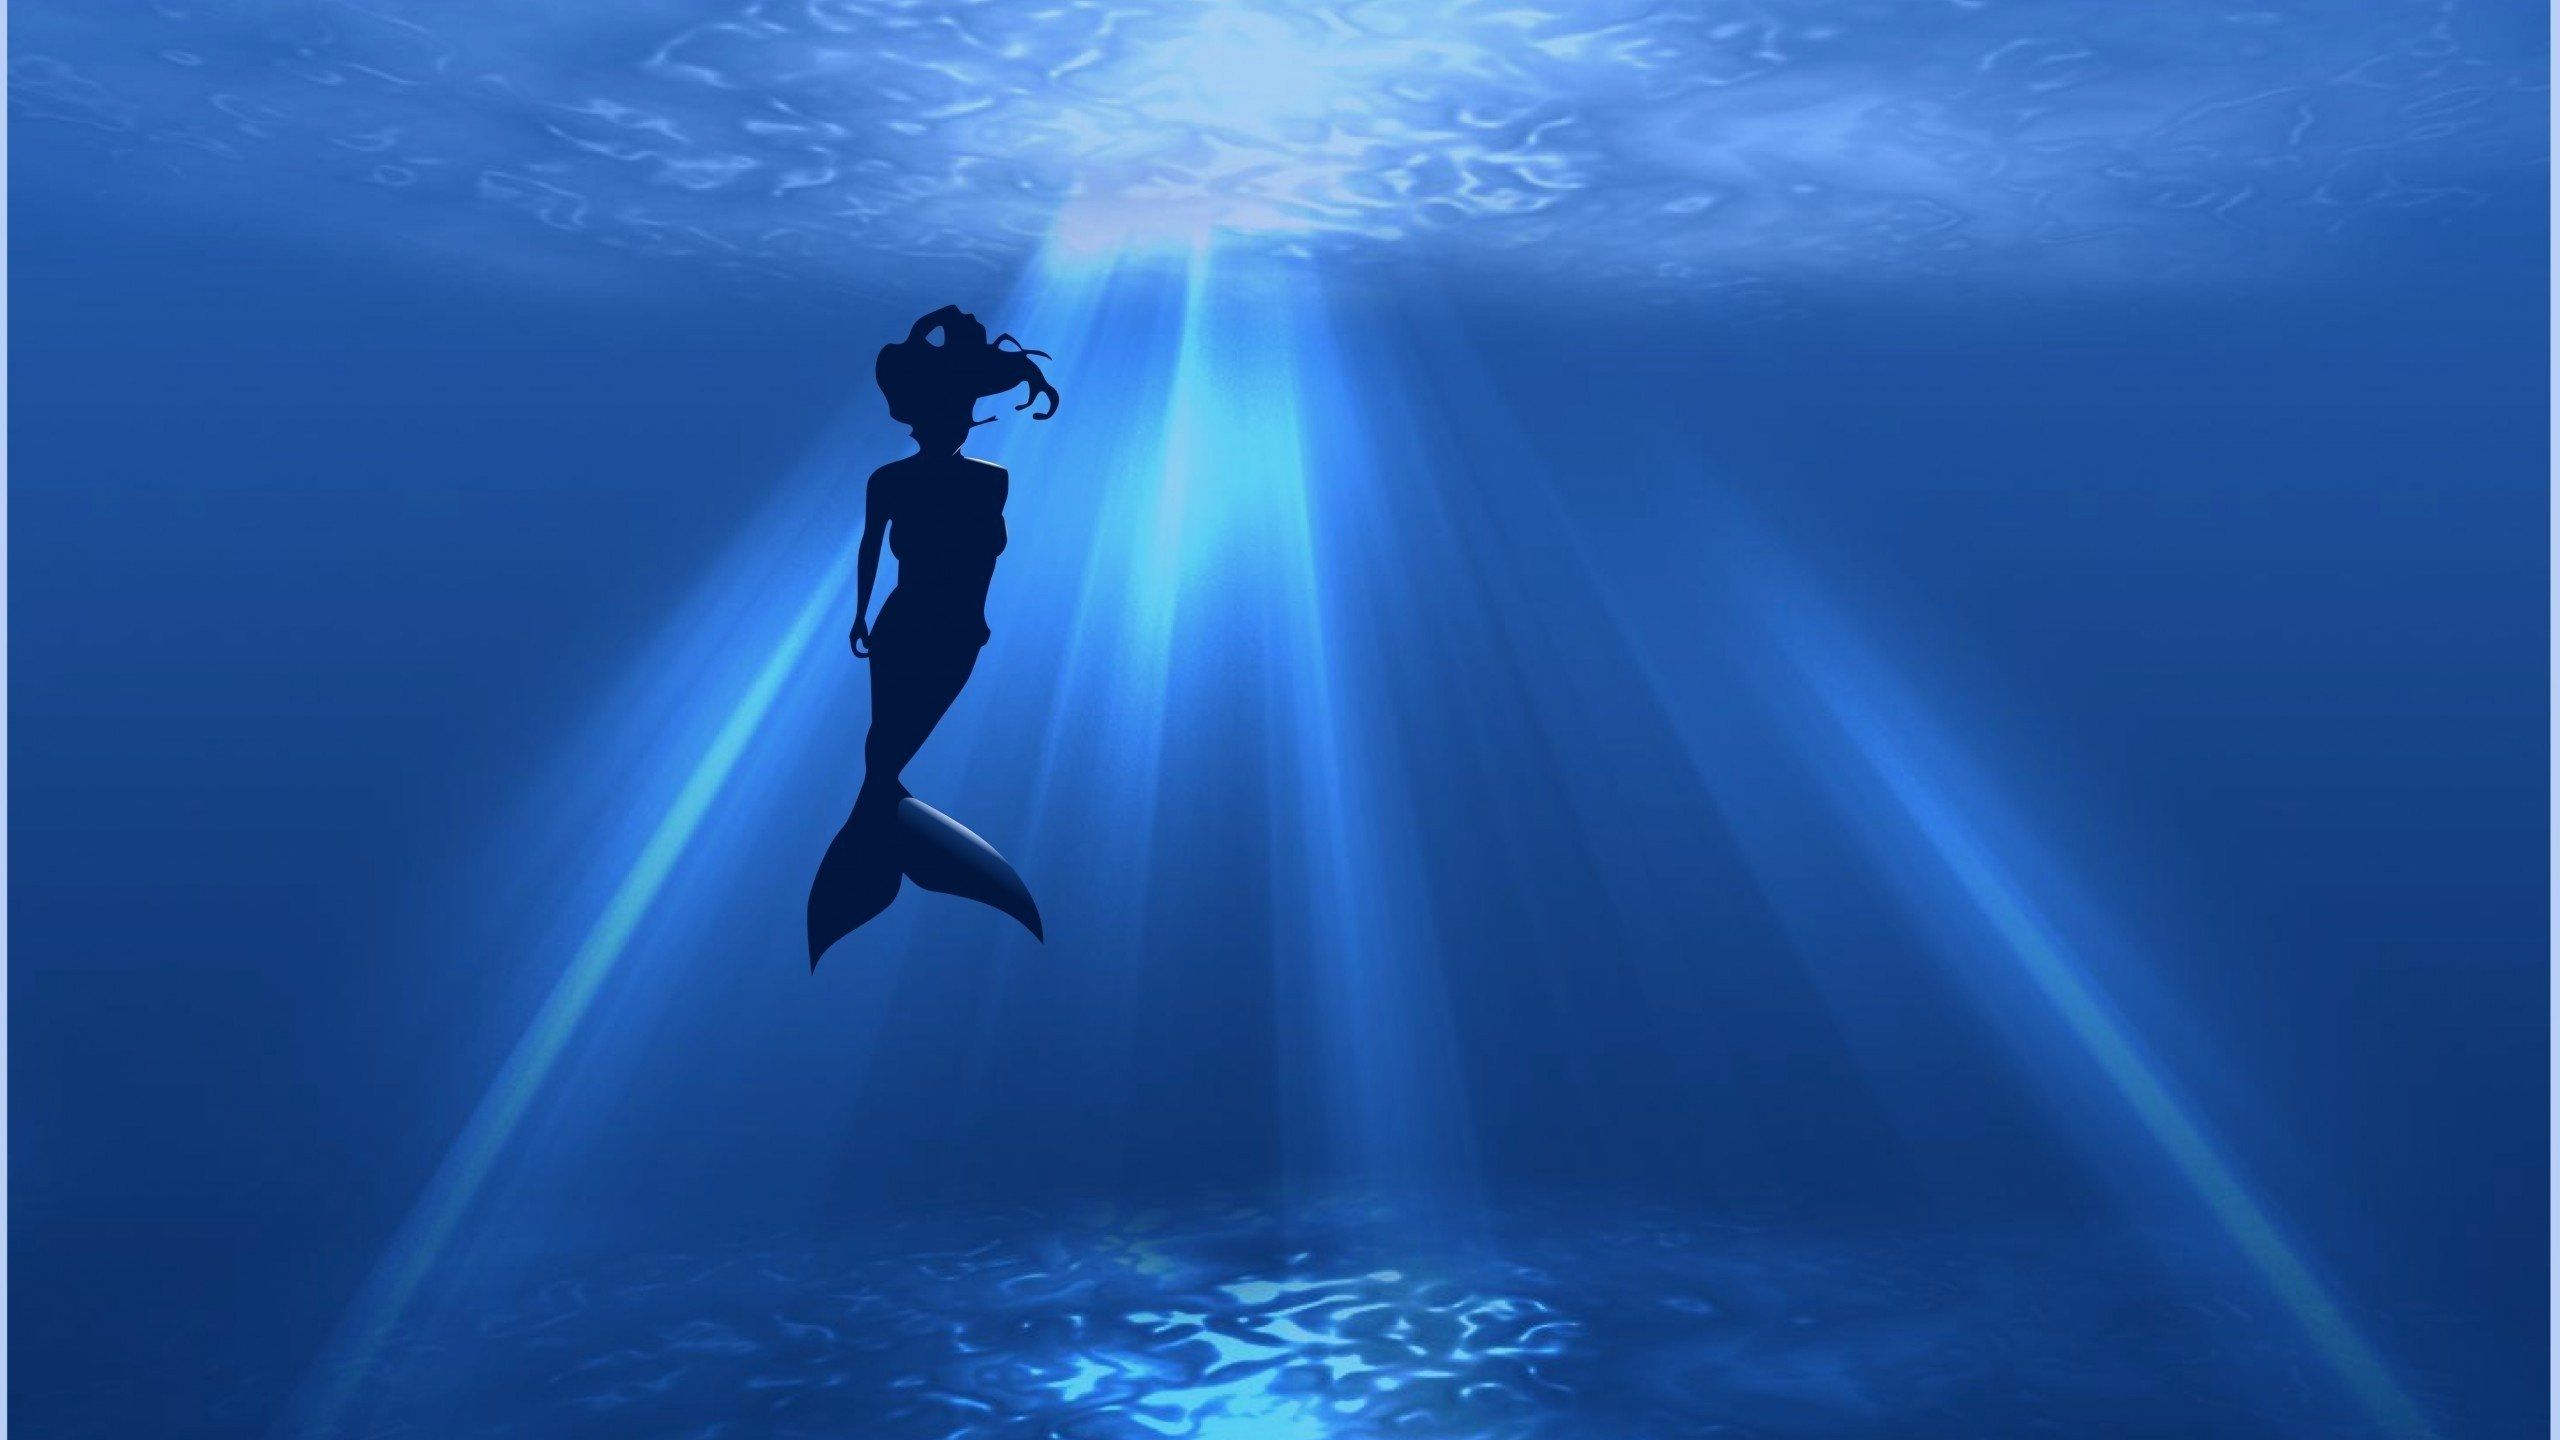 A mermaid swimming in the ocean - Mermaid